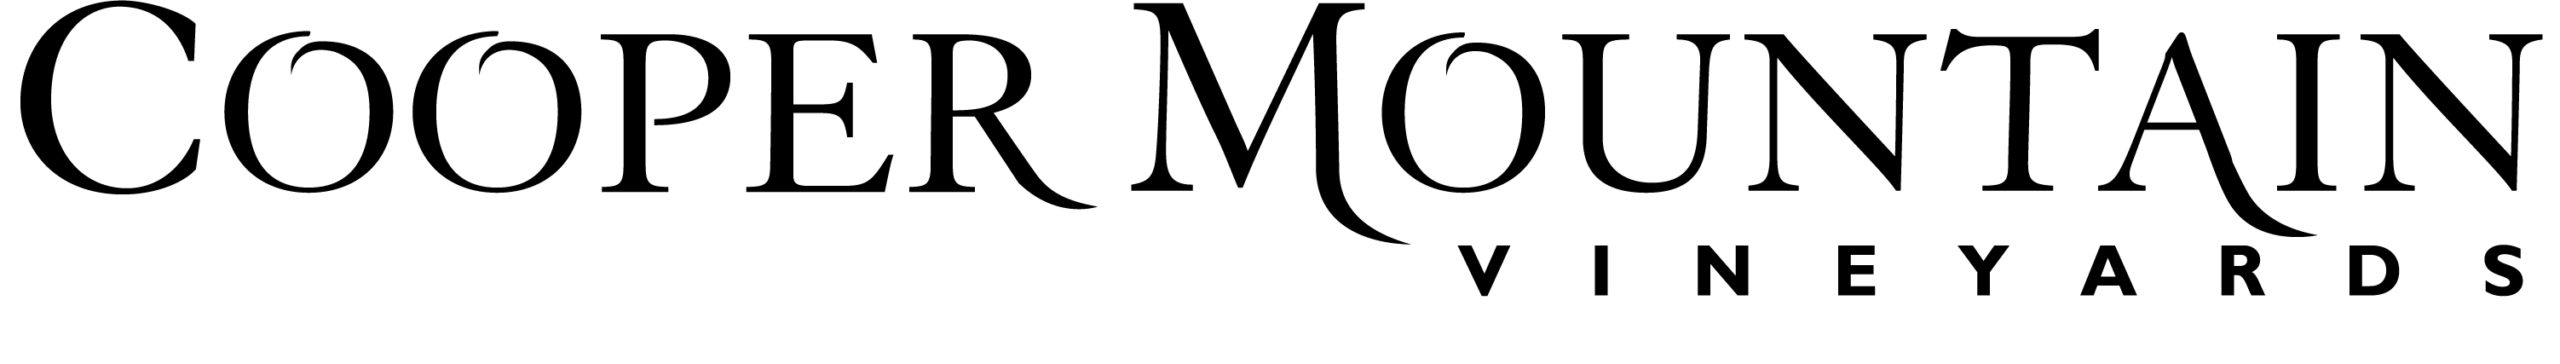 Cooper Mountain Vineyards Logo